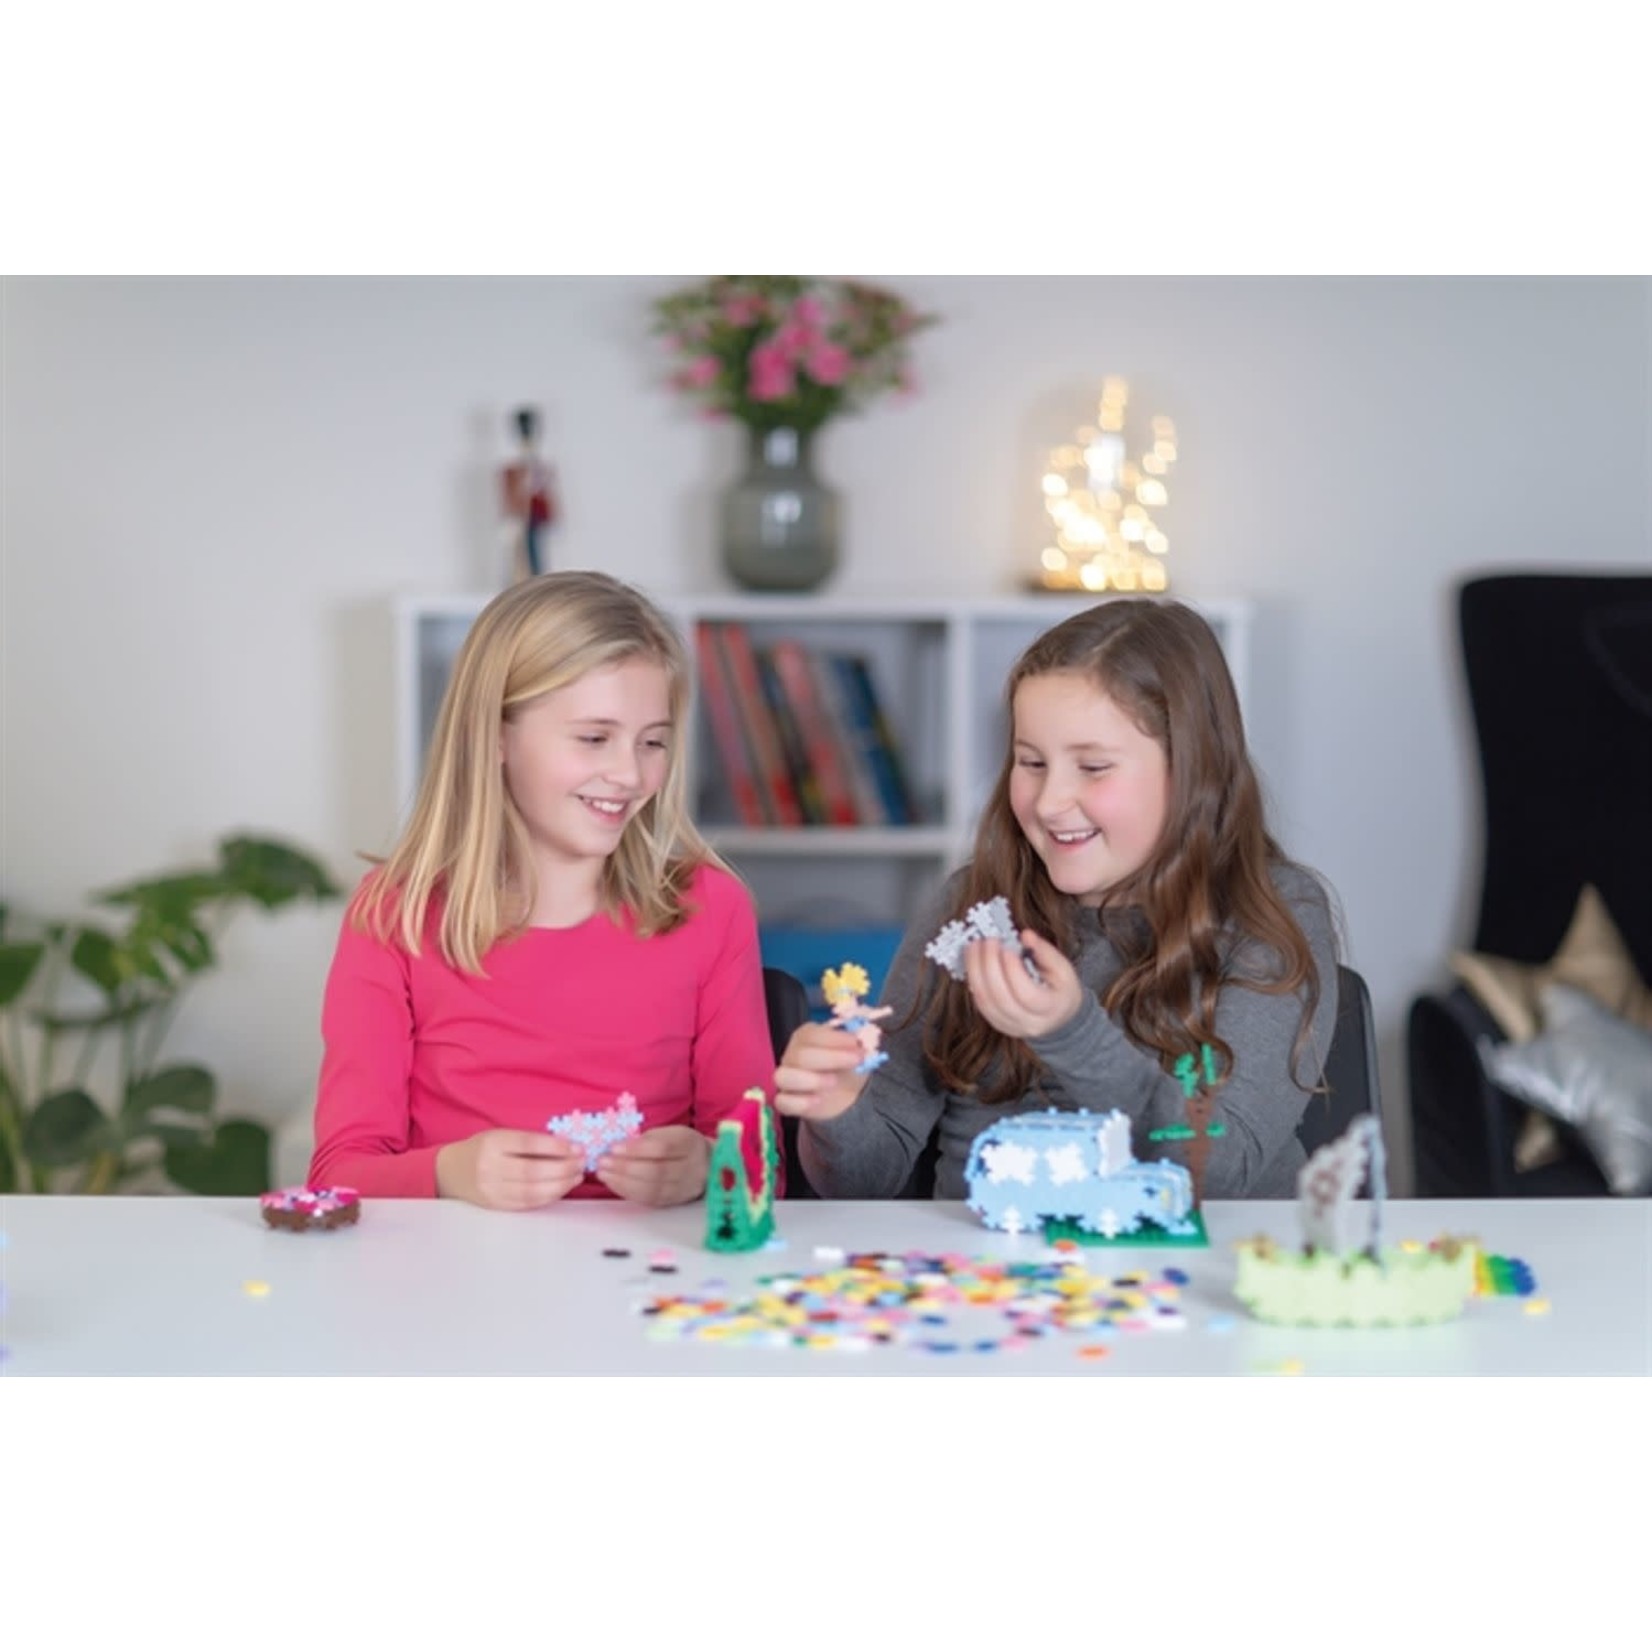 PlusPlus PLUSPLUS - Learn to build creative kit - Pastel - 400 pieces